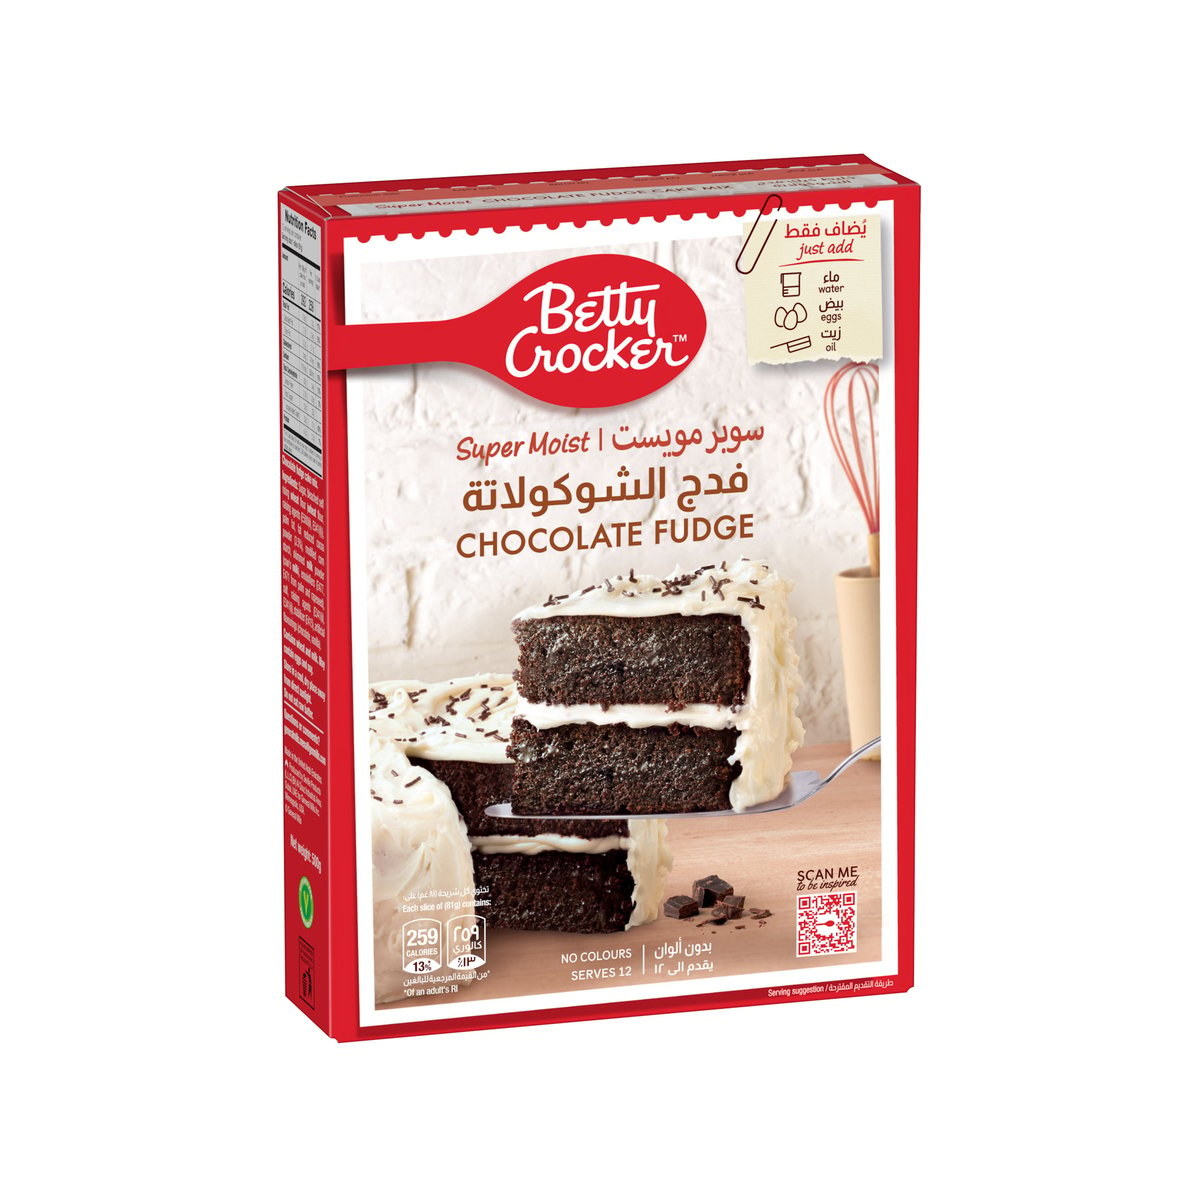 اشتري قم بشراء بيتي كروكر خليط كيك فائق الهشاشة بنكهة الشوكولاتة ٥٠٠ جم Online at Best Price من الموقع - من لولو هايبر ماركت Cake & Dessert Mixes في السعودية